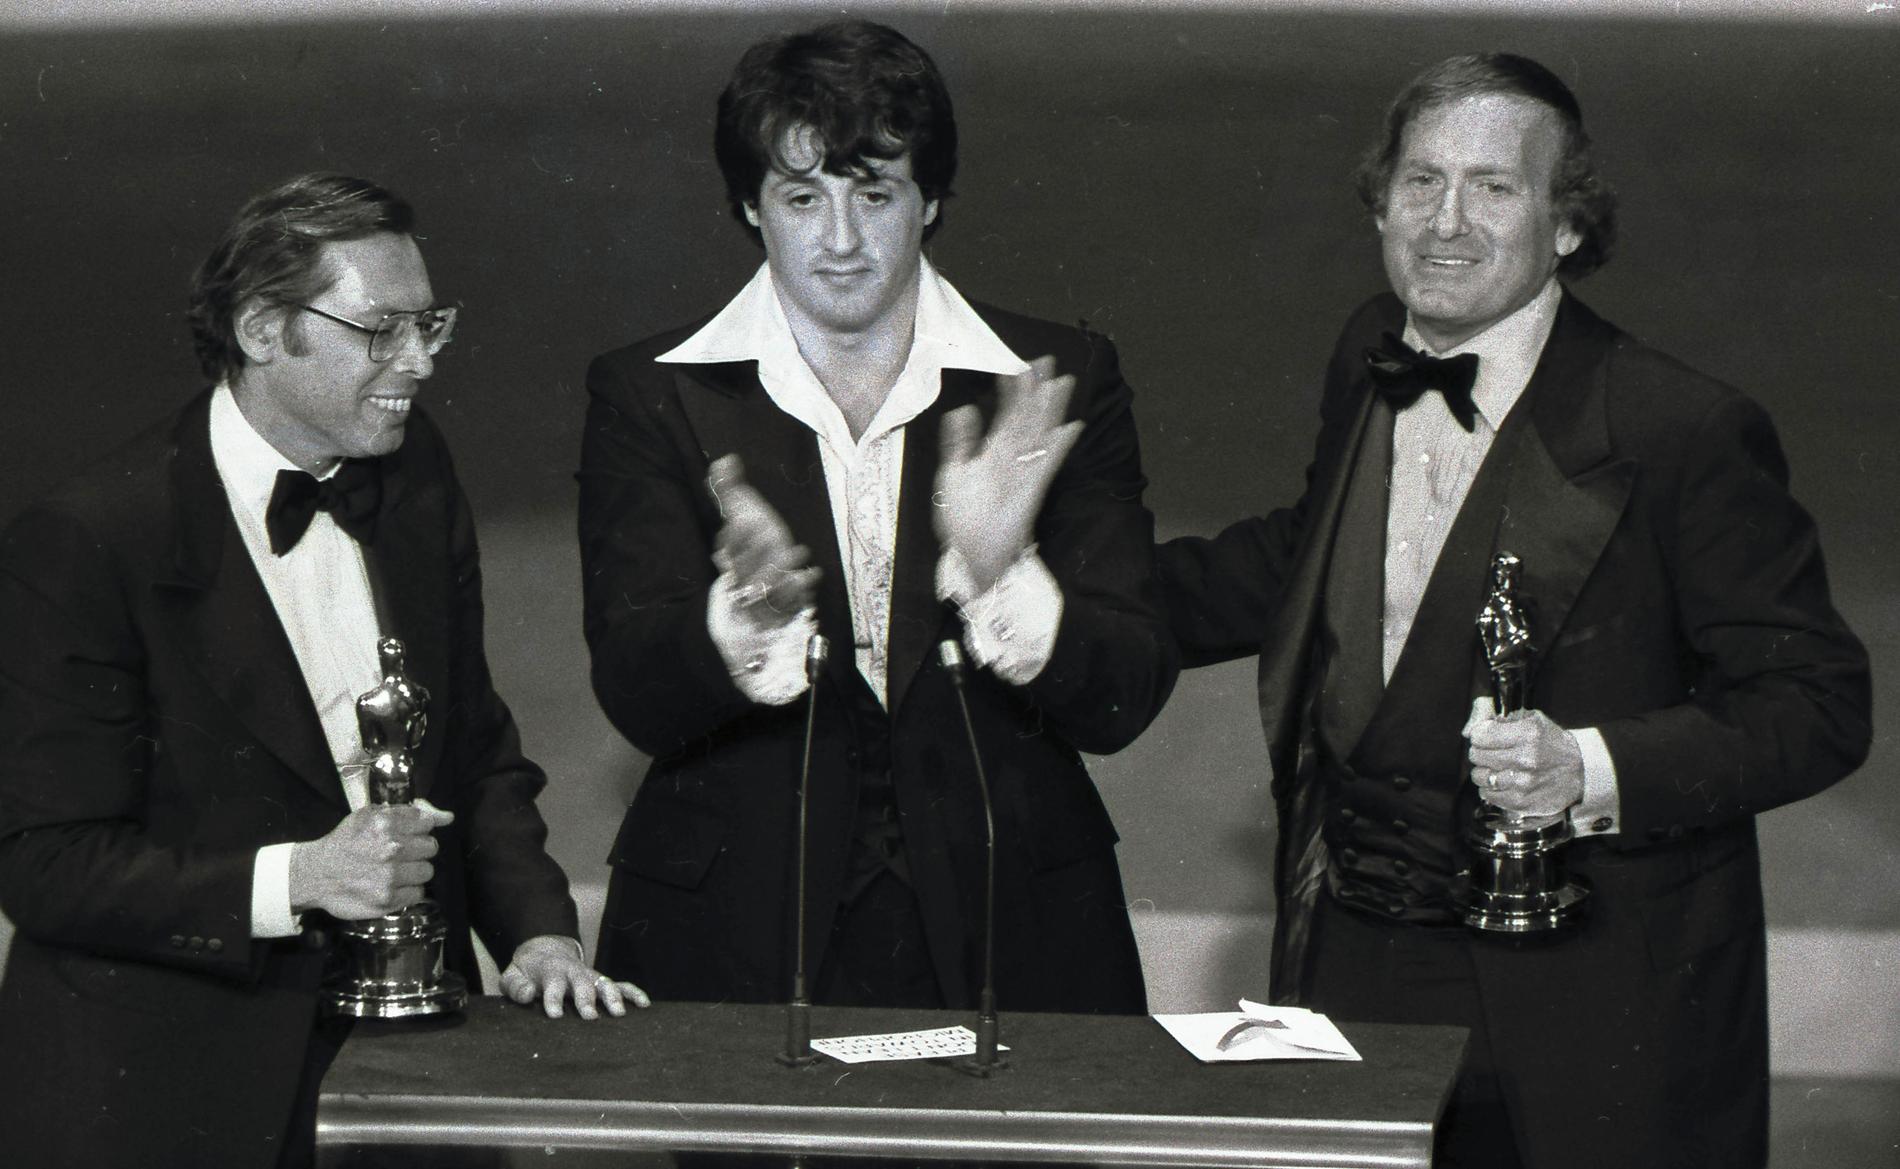 Robert Chartoff (höger) och producentkollegan Irwin Winkler (vänster) tar emot Oscarstatyetten för "Rocky" tillsammans med Sylvester Stallone 1976.